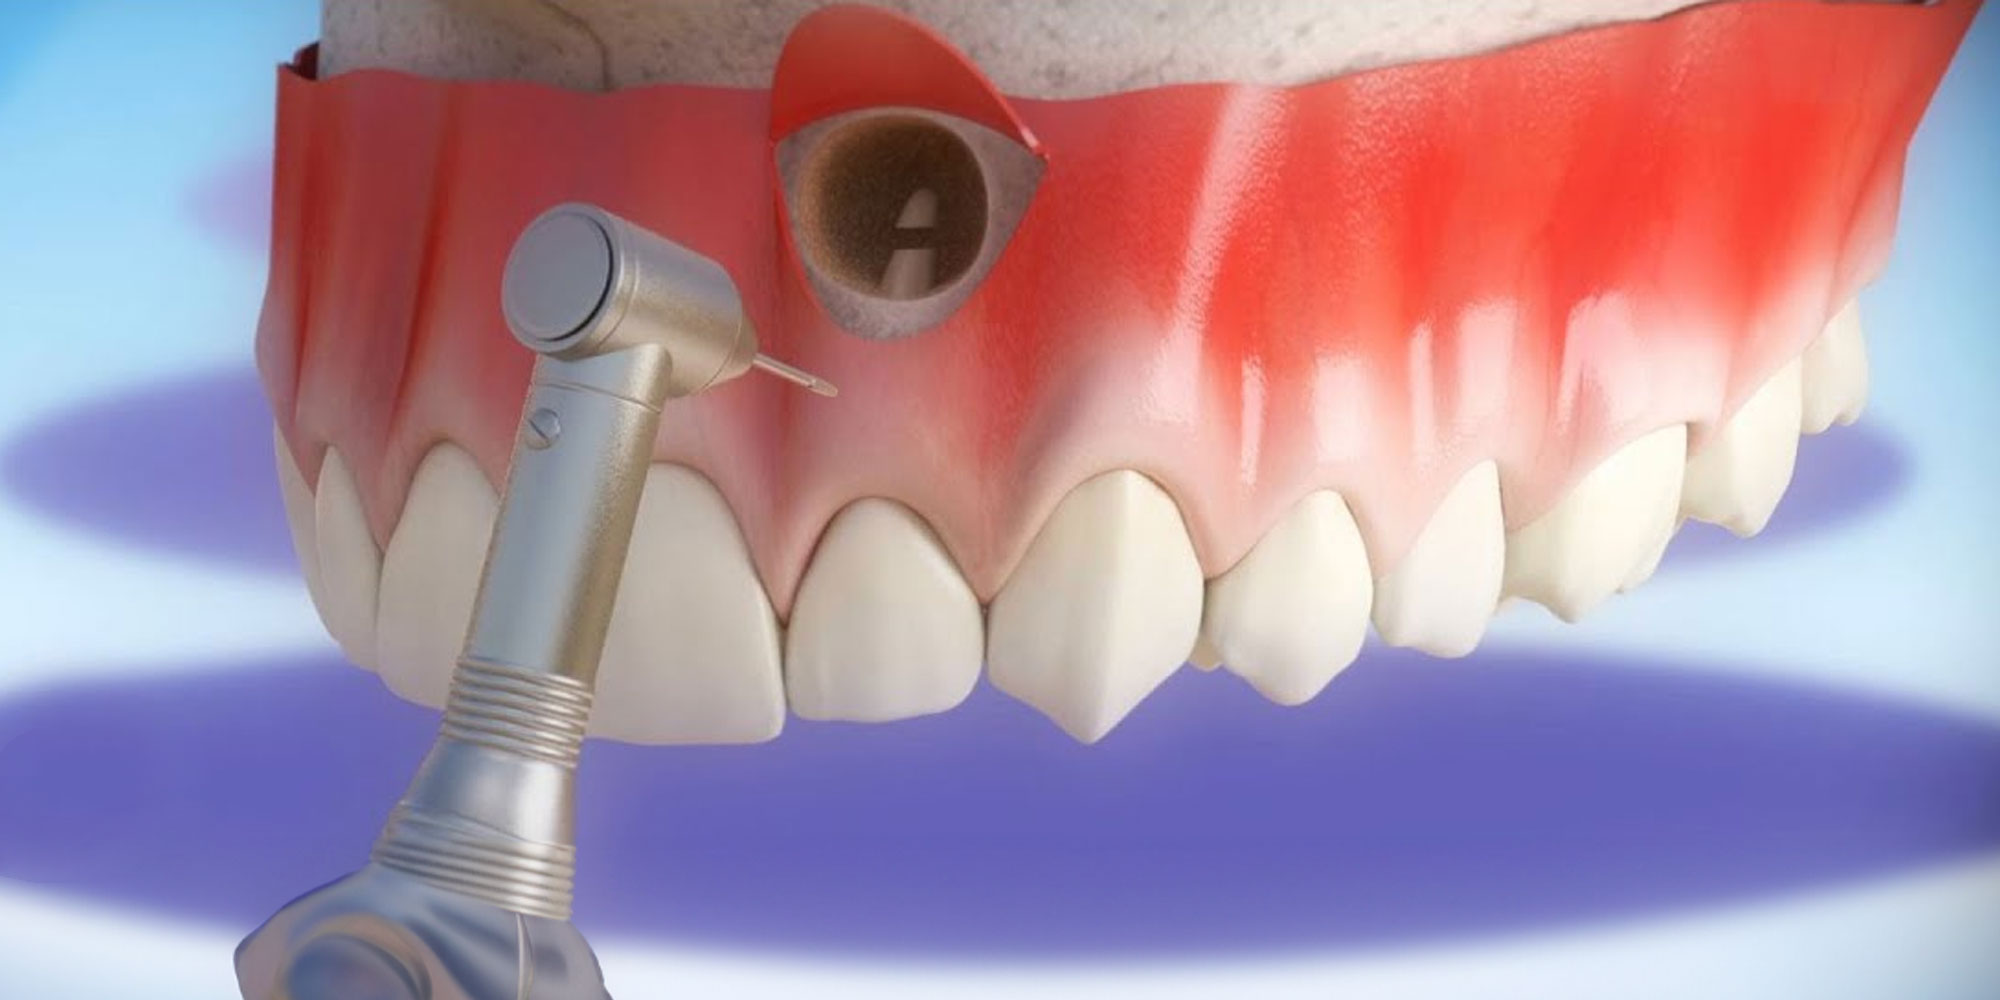 Tooth acrorrhizectomy-oradent.gr